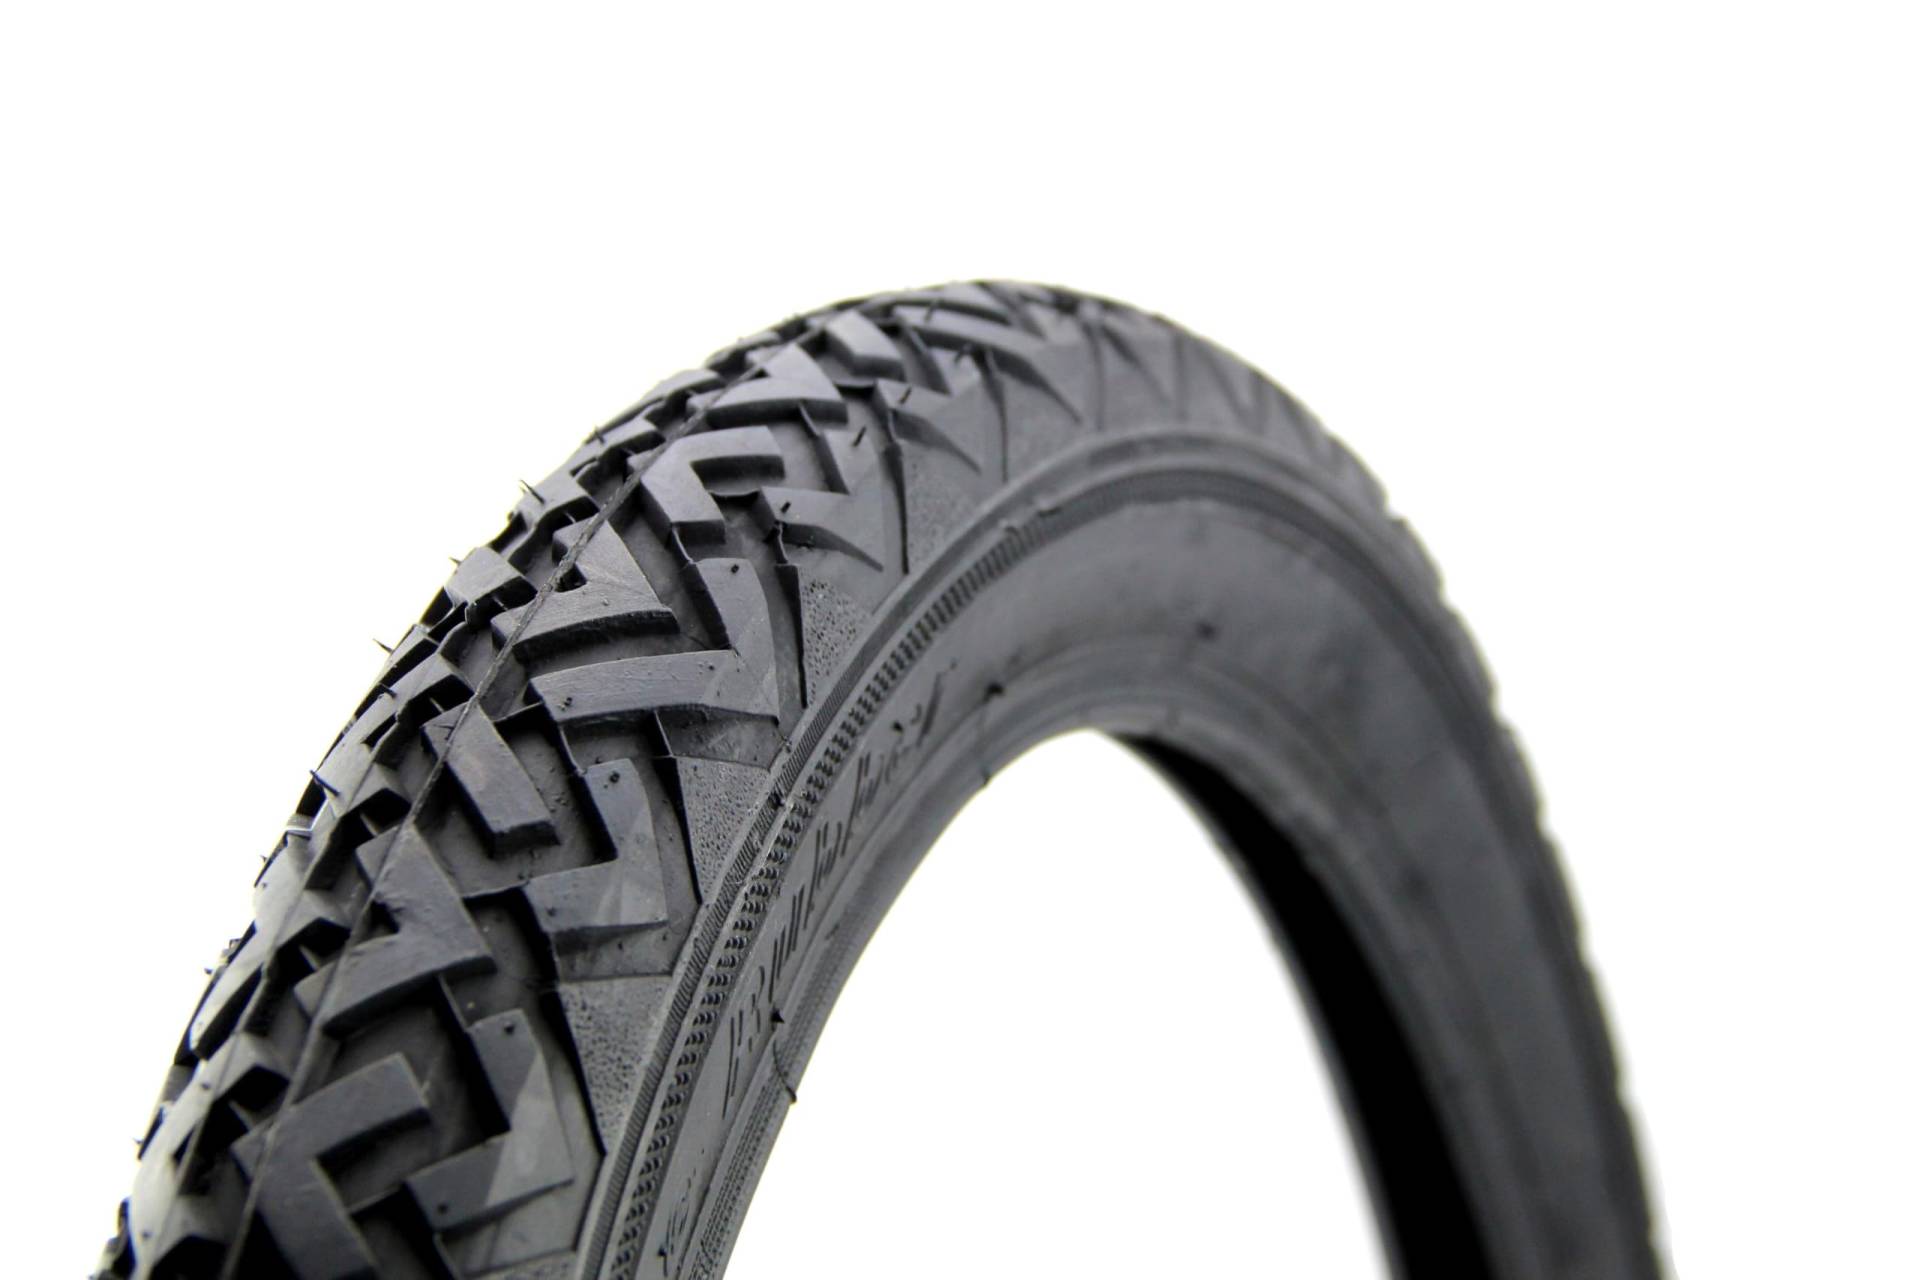 Vee Rubber Reifen 2,75 x 17 Zoll, Profil VRM 087, 46J, Tubetype, Vorderrad oder Hinterrad für Moped, Mofa, Motorrad von BISOMO